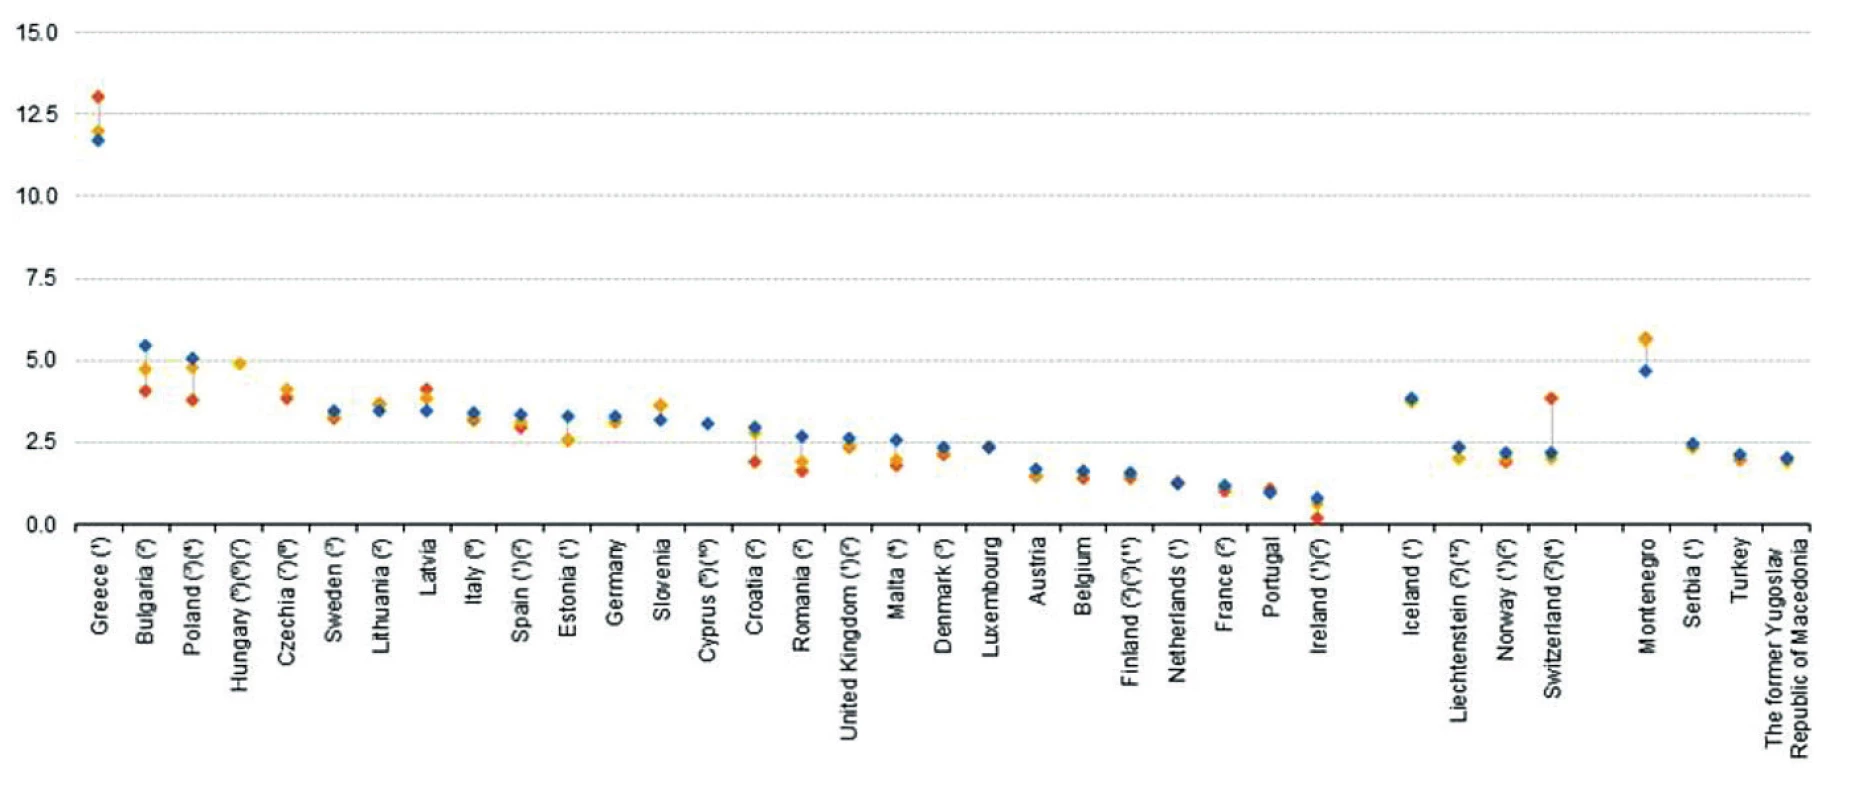 Lékaři – poměr specialistů ke všeobecným lékařům, roky 2006 (červeně), 2011 (žlutě), 2016 (modře). Zdroj: Eurostat